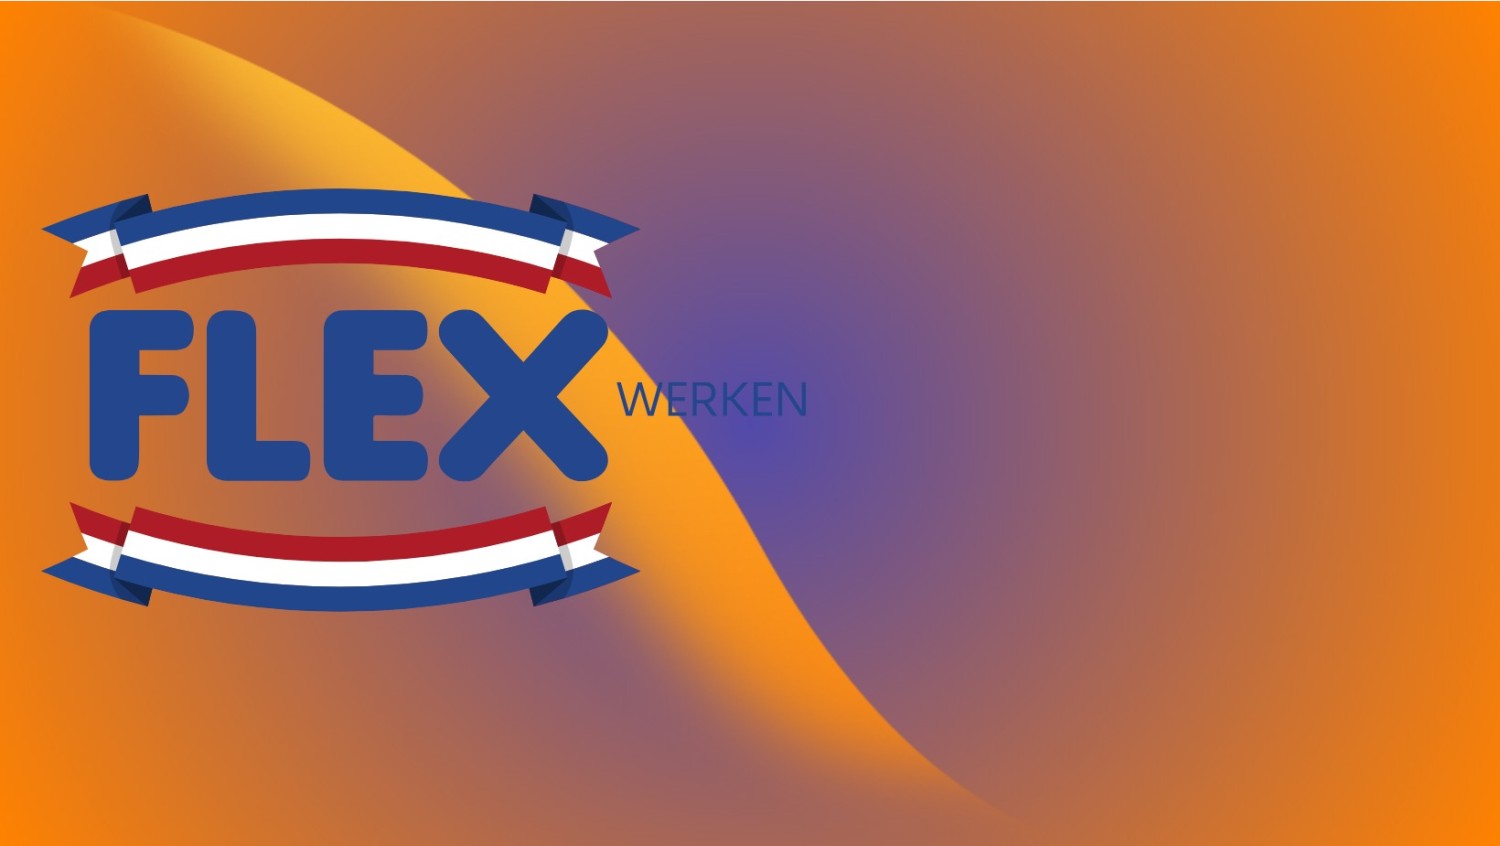 FLEX Werken